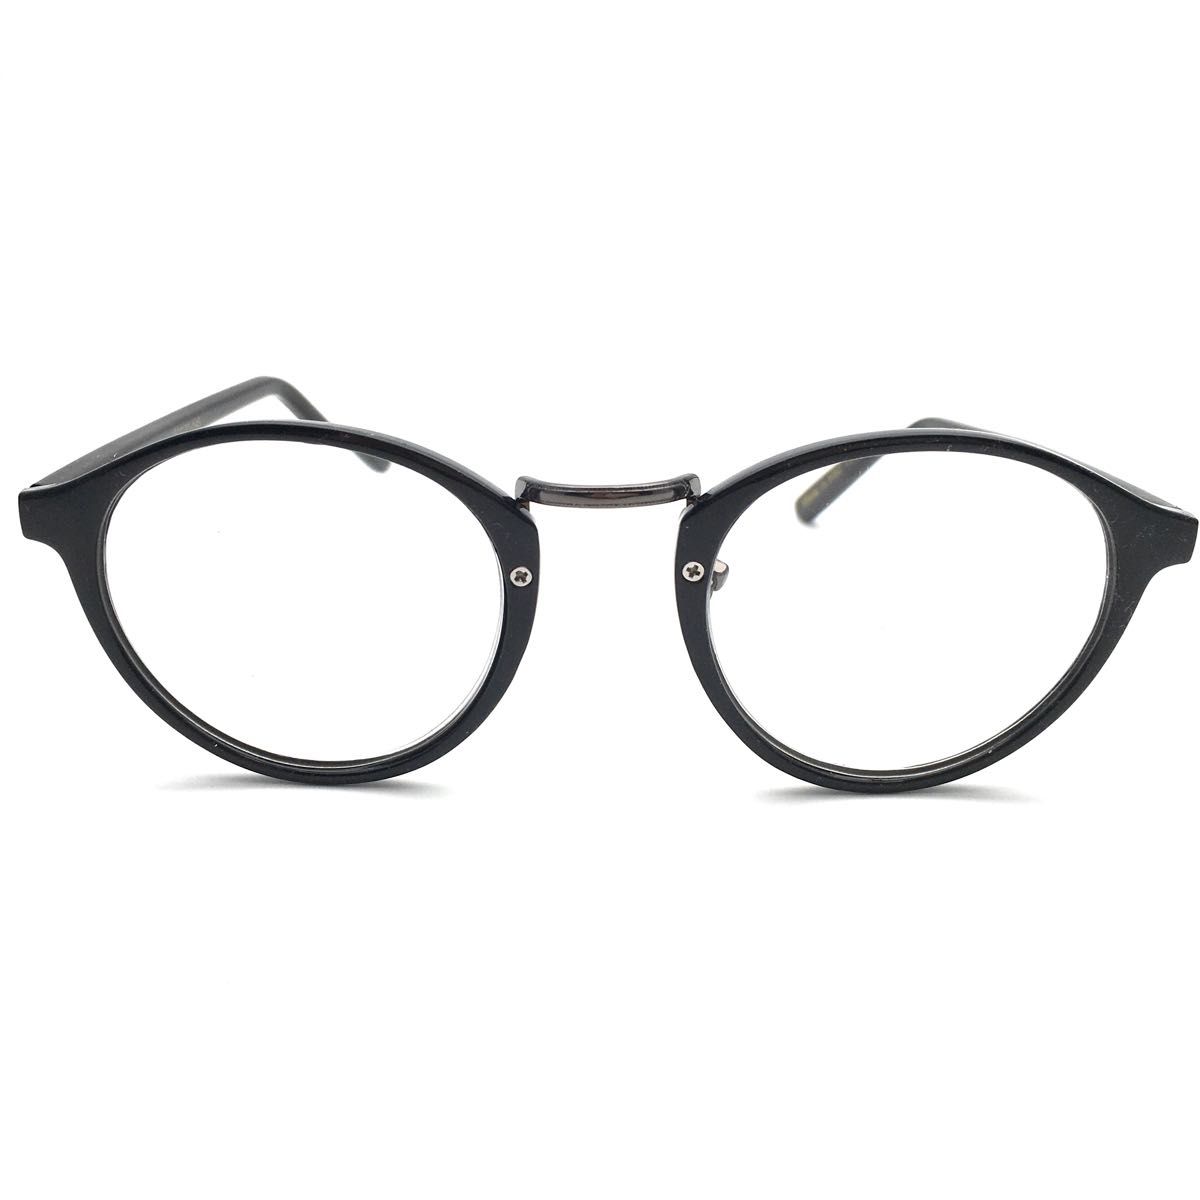 アウトレット！老眼鏡に見えない！ダテメガネのようなおしゃれな老眼鏡♪ブルーライト、紫外線カットレンズ仕様　ケース付　+2.00BK